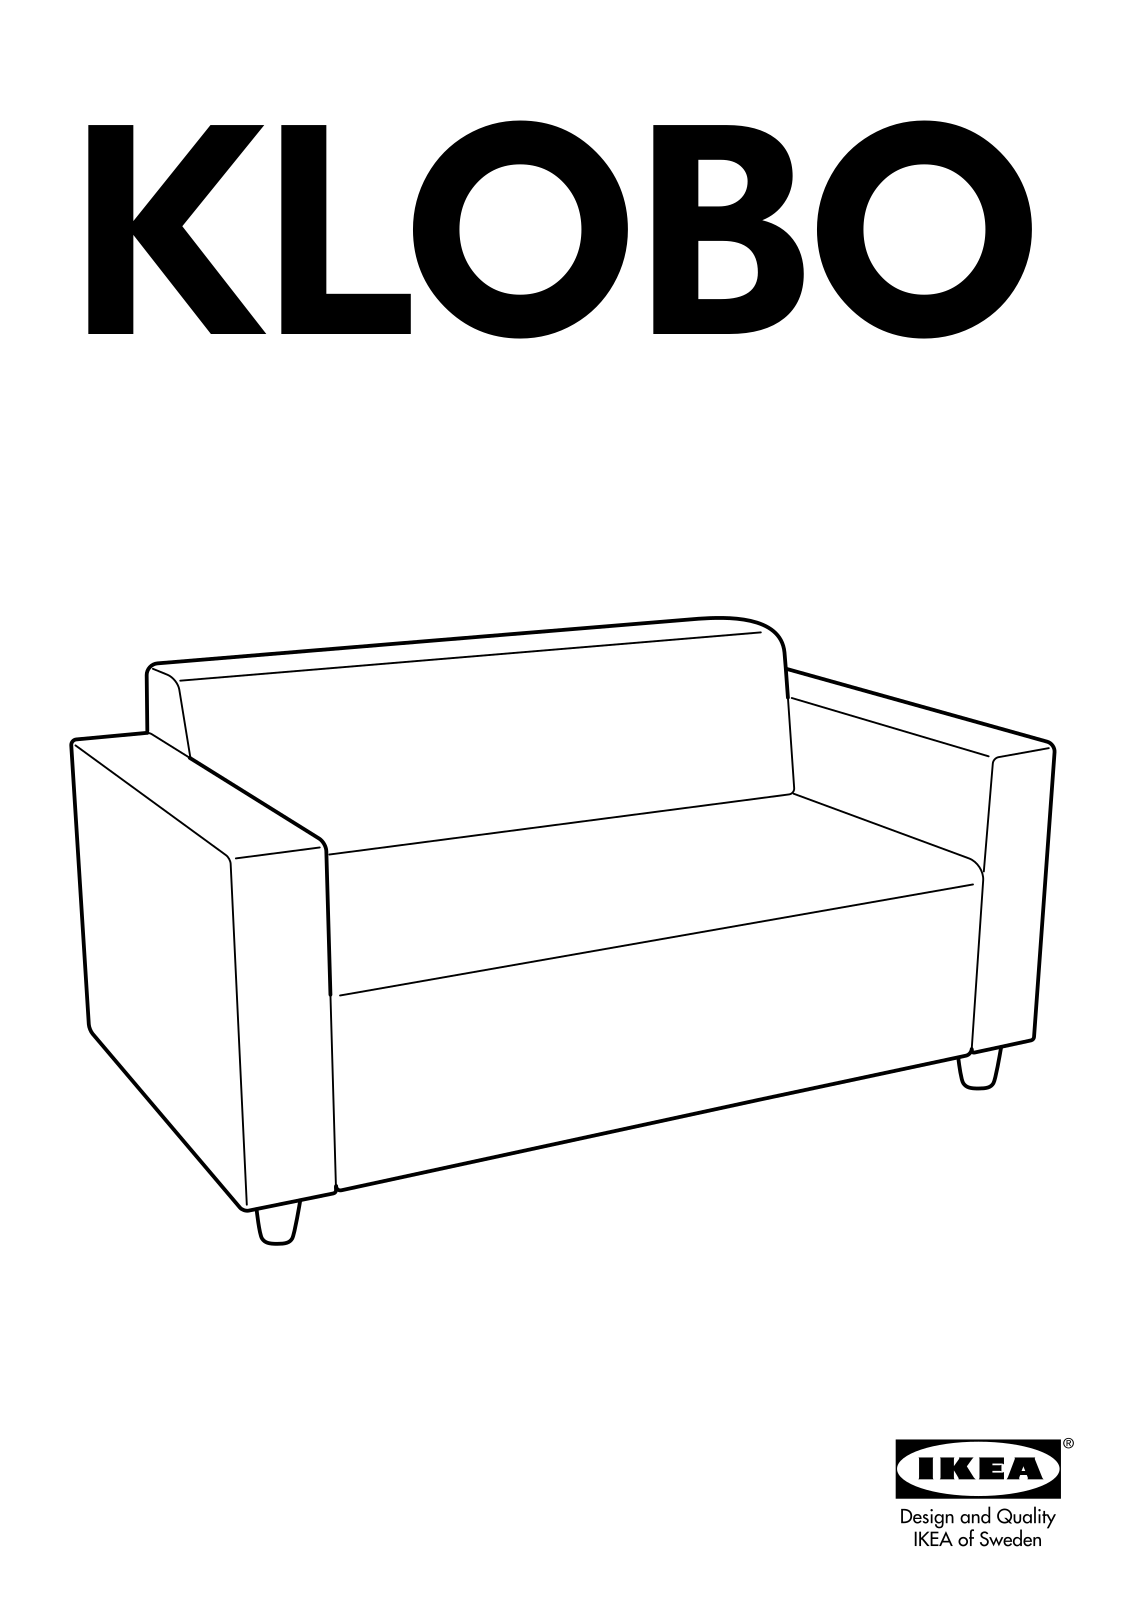 IKEA KLOBO User Manual